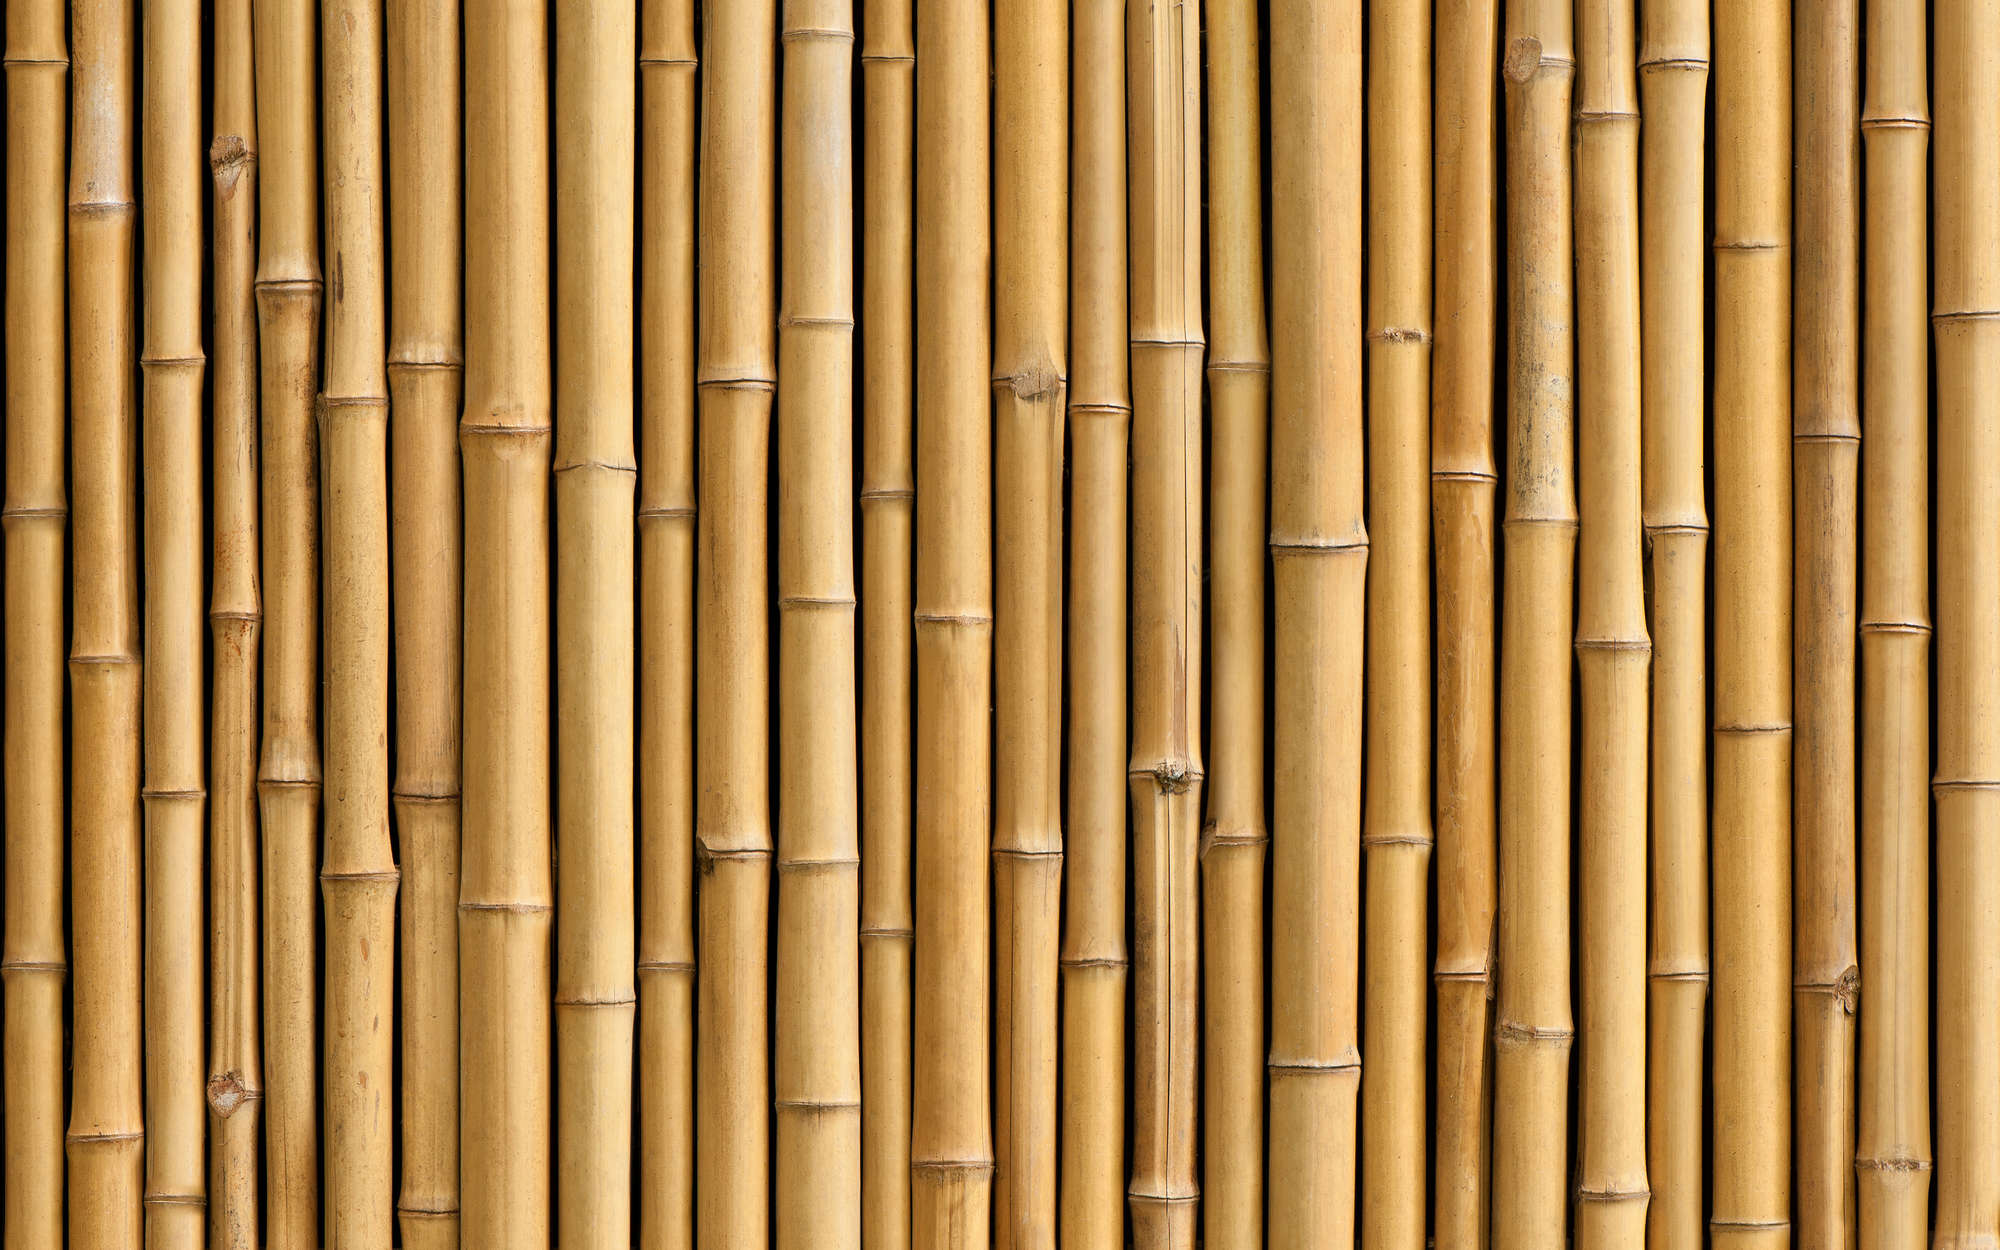             Fototapete Wand aus Bambus in Beige – Strukturiertes Vlies
        